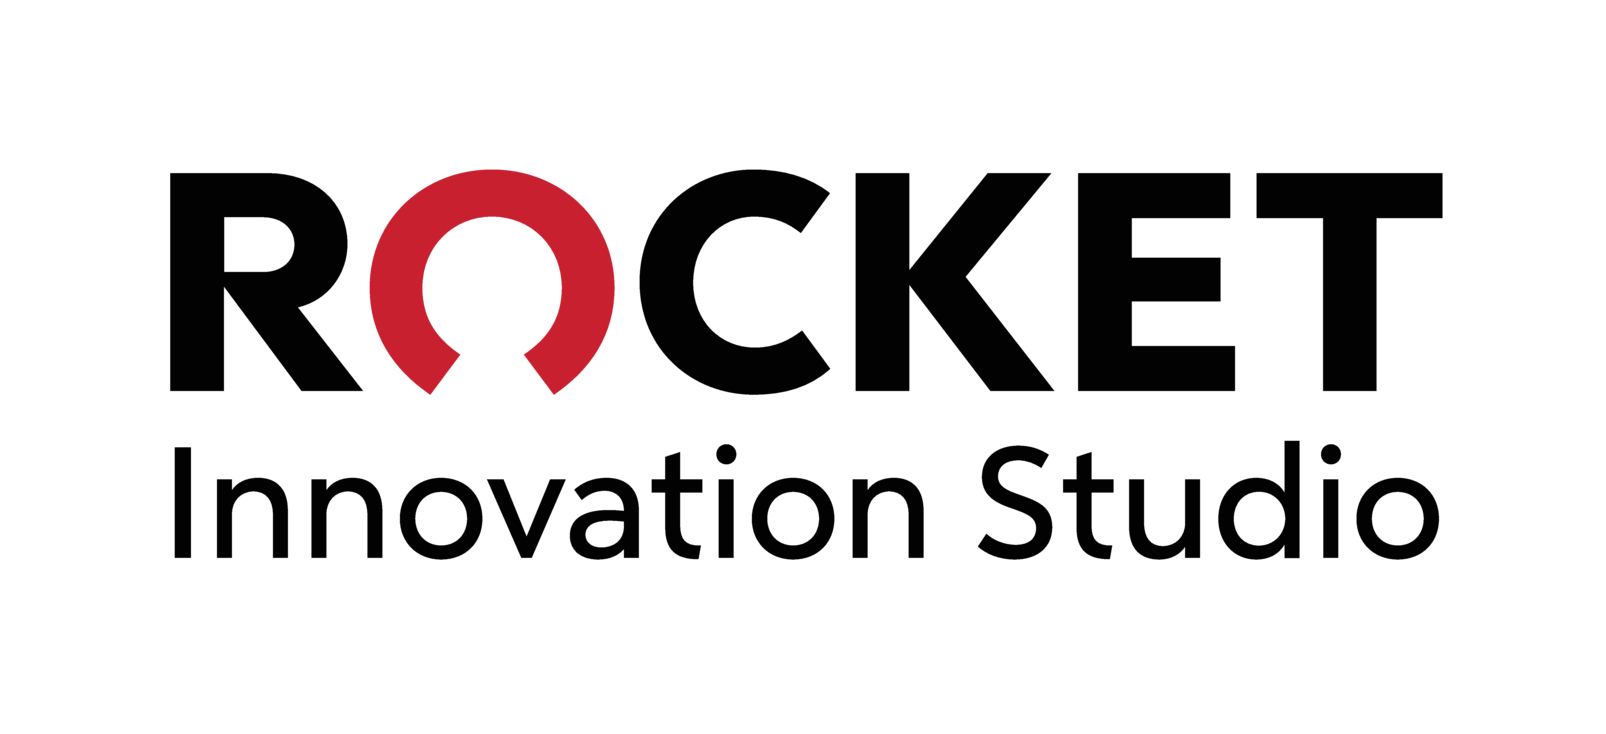 Rocket Innovation Studio logo